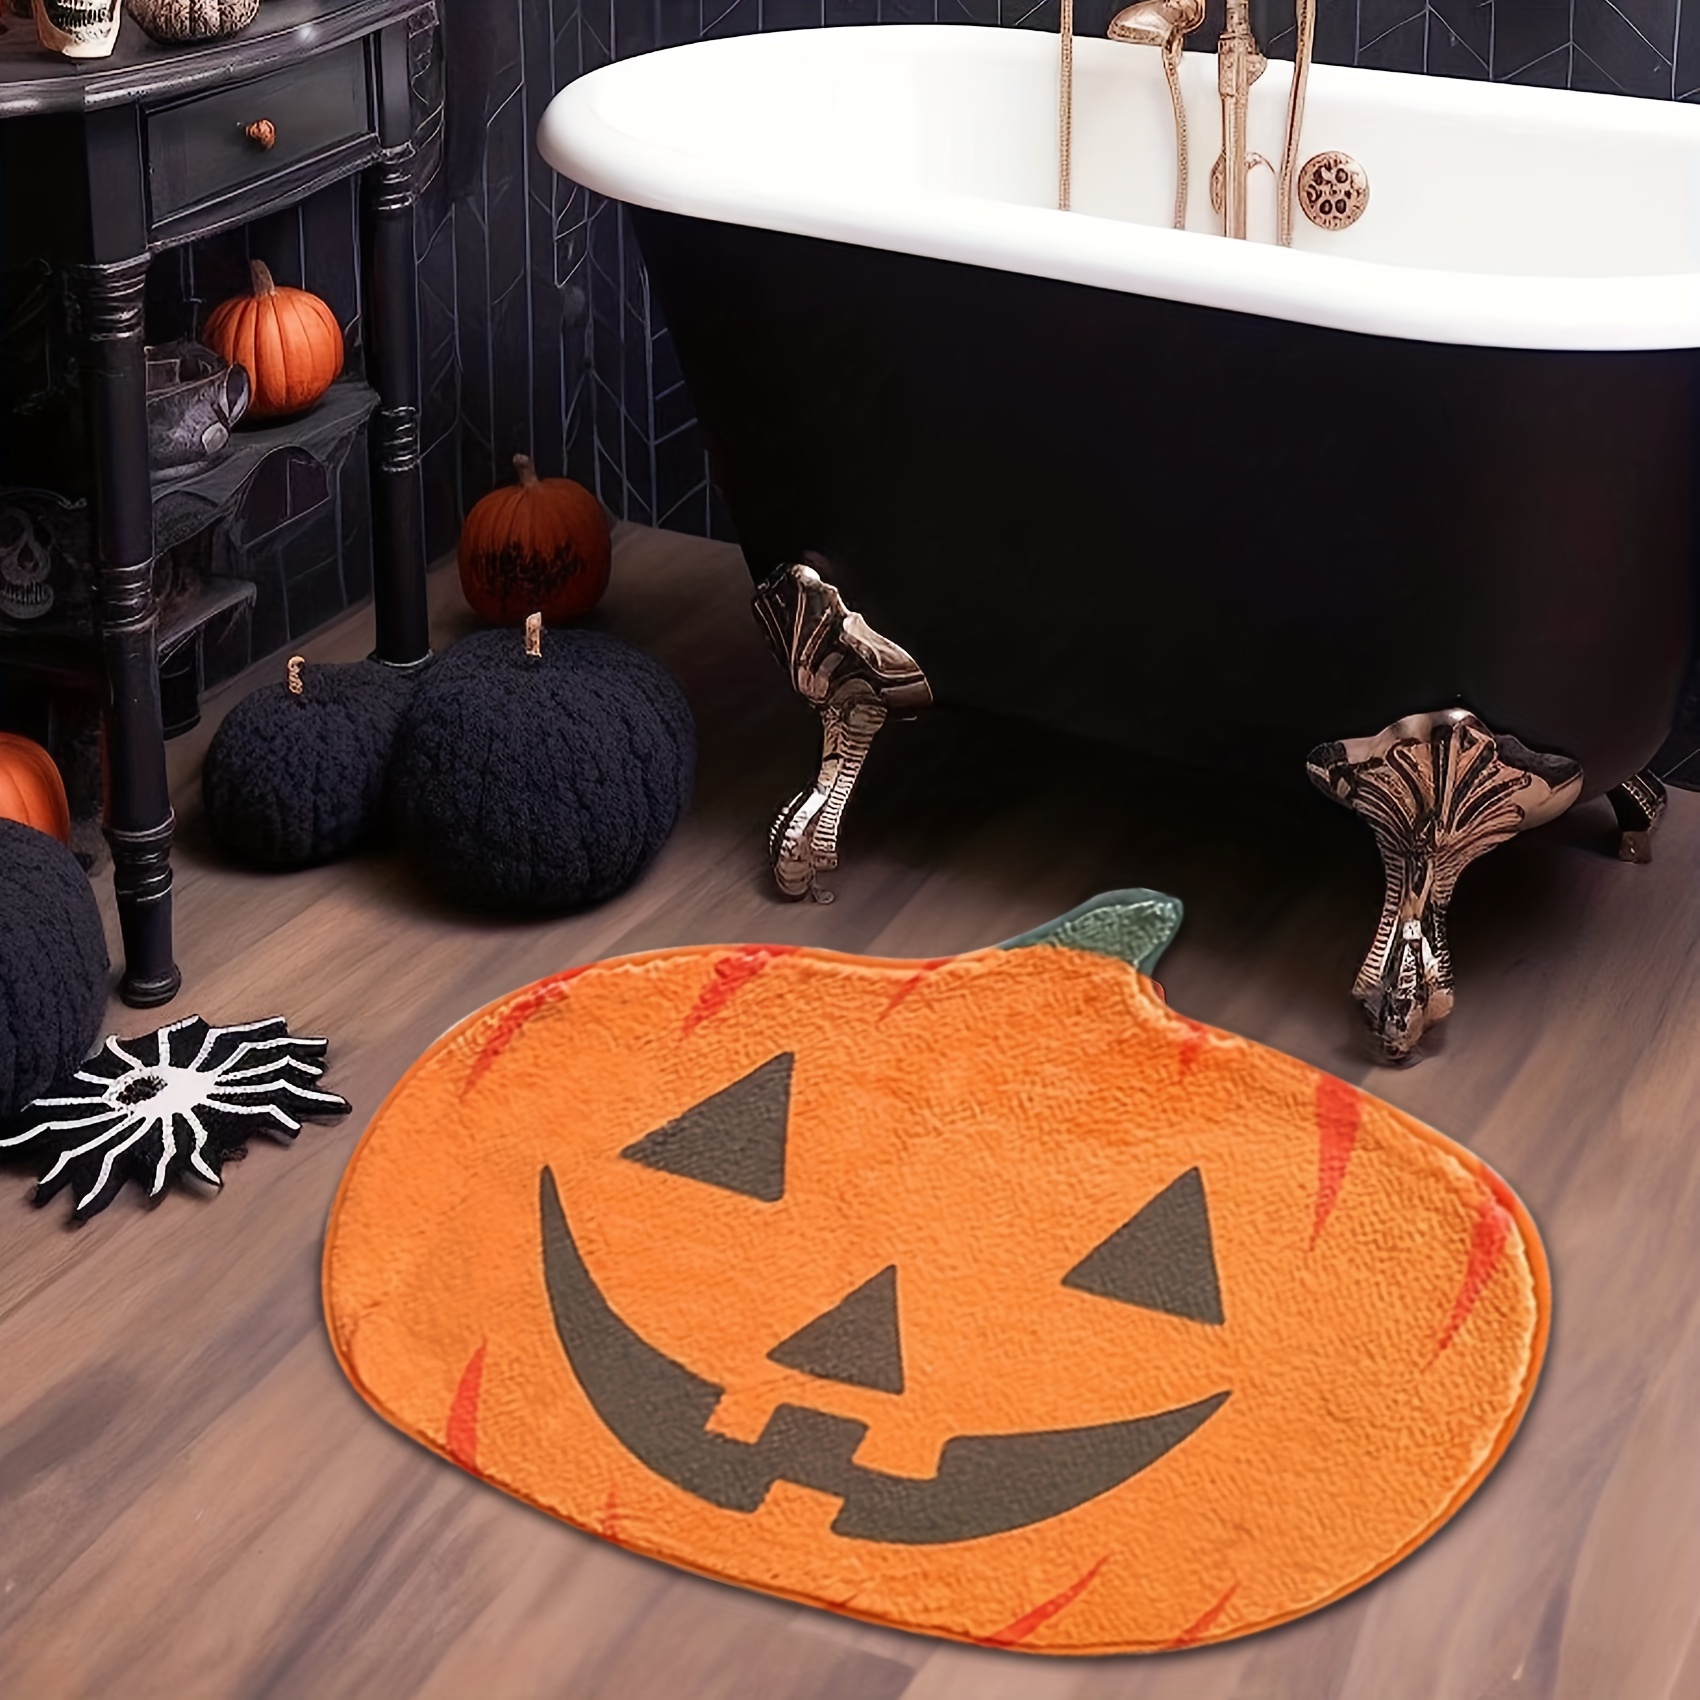 Halloween Bloody Footprint Carpet Runner - Party Tableware Decoration Floor  Door